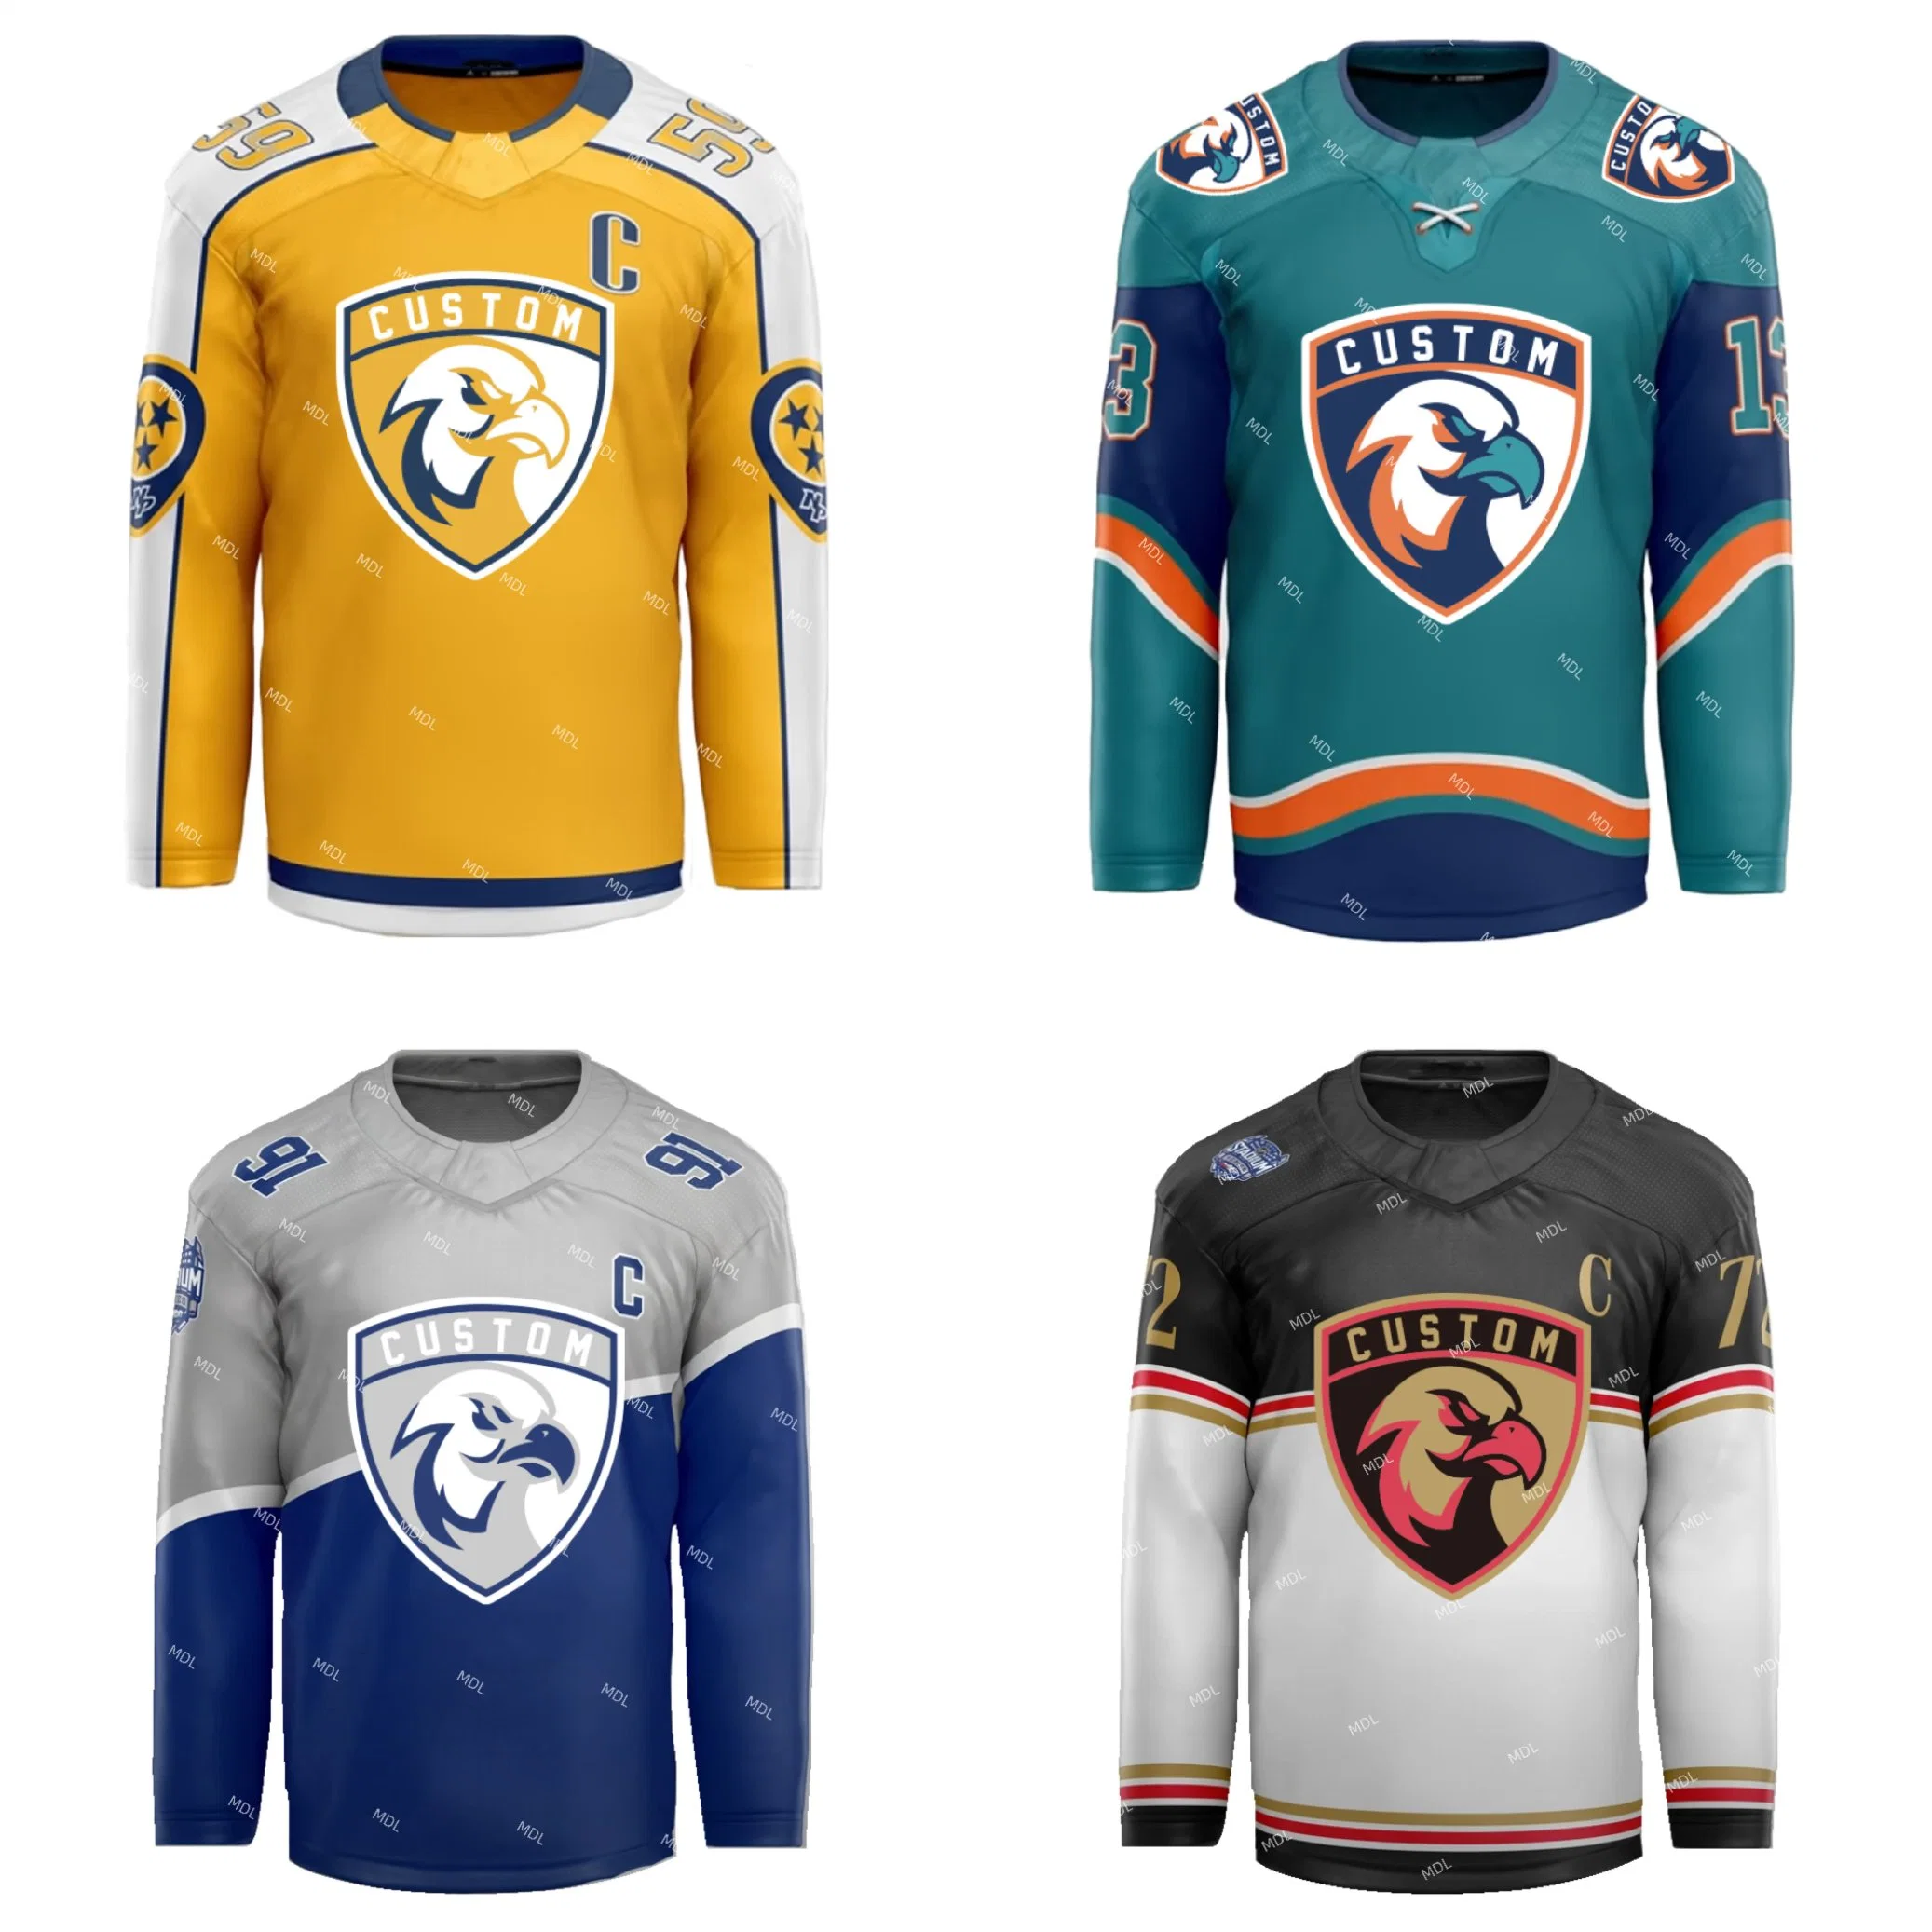 Ropa de Moda uniforme de Hockey ropa Equipo ropa Deportes uniforme poliéster Camiseta de hockey sobre hielo